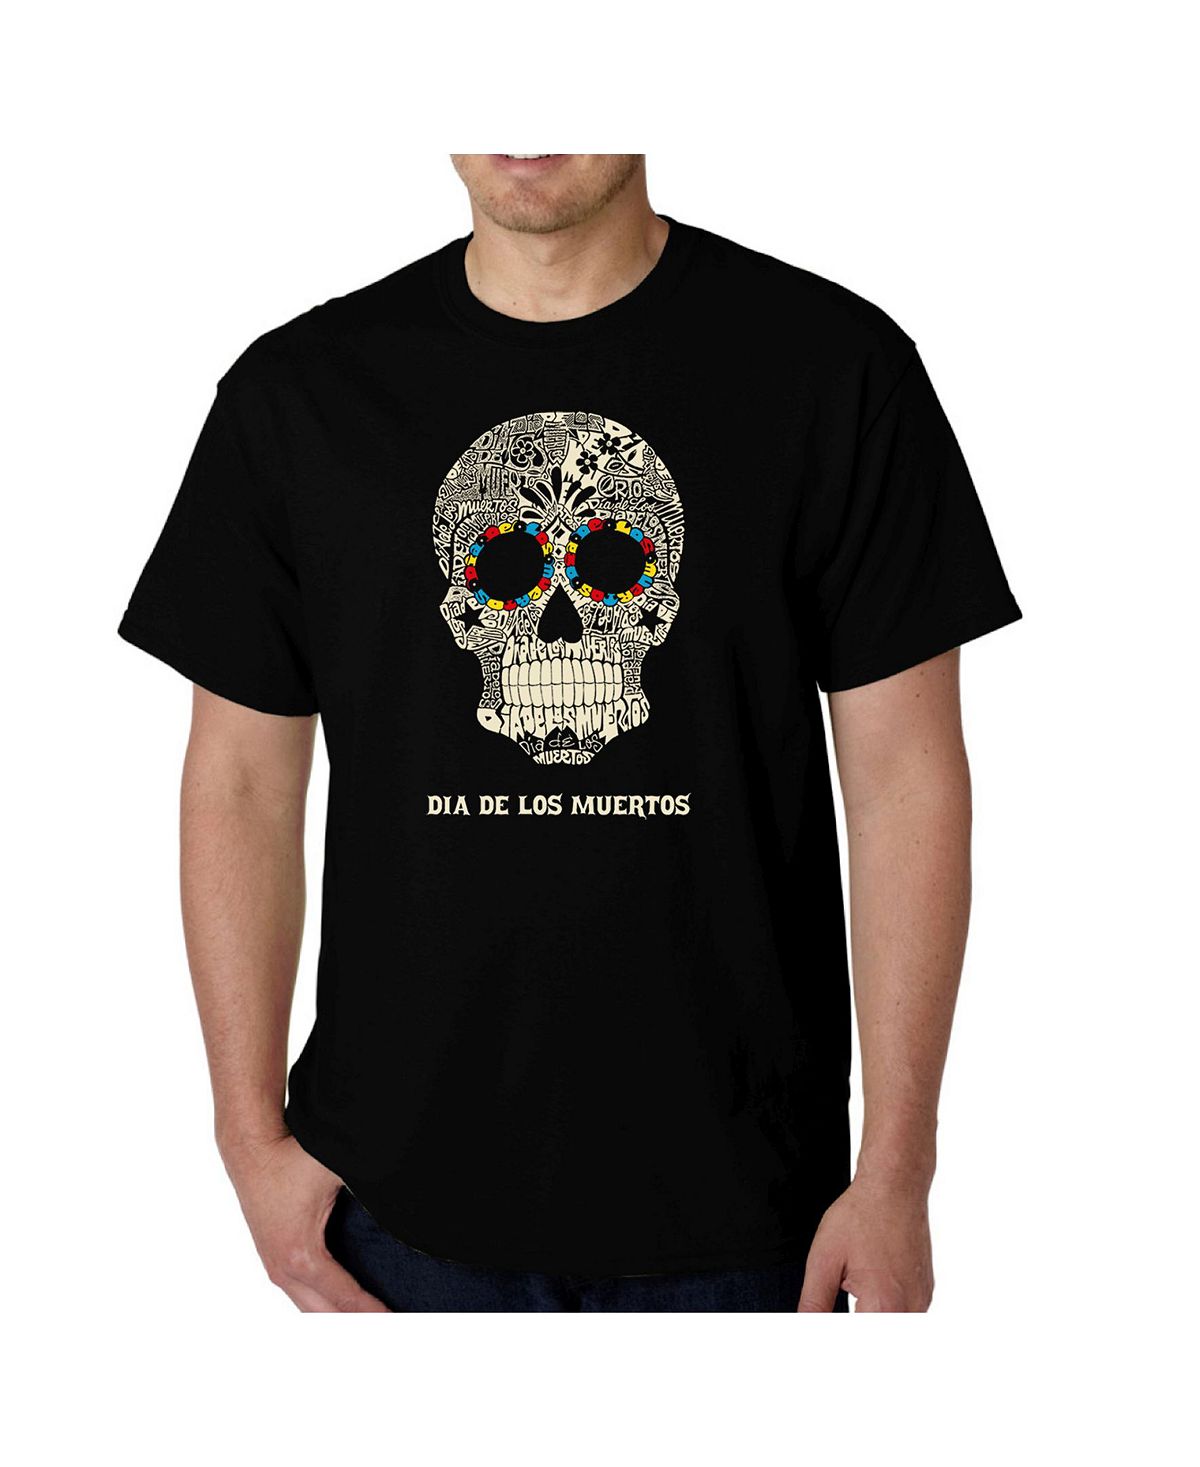 Мужская футболка word art - dia de los muertos LA Pop Art, черный мужская футболка сахарный череп с цветами l черный